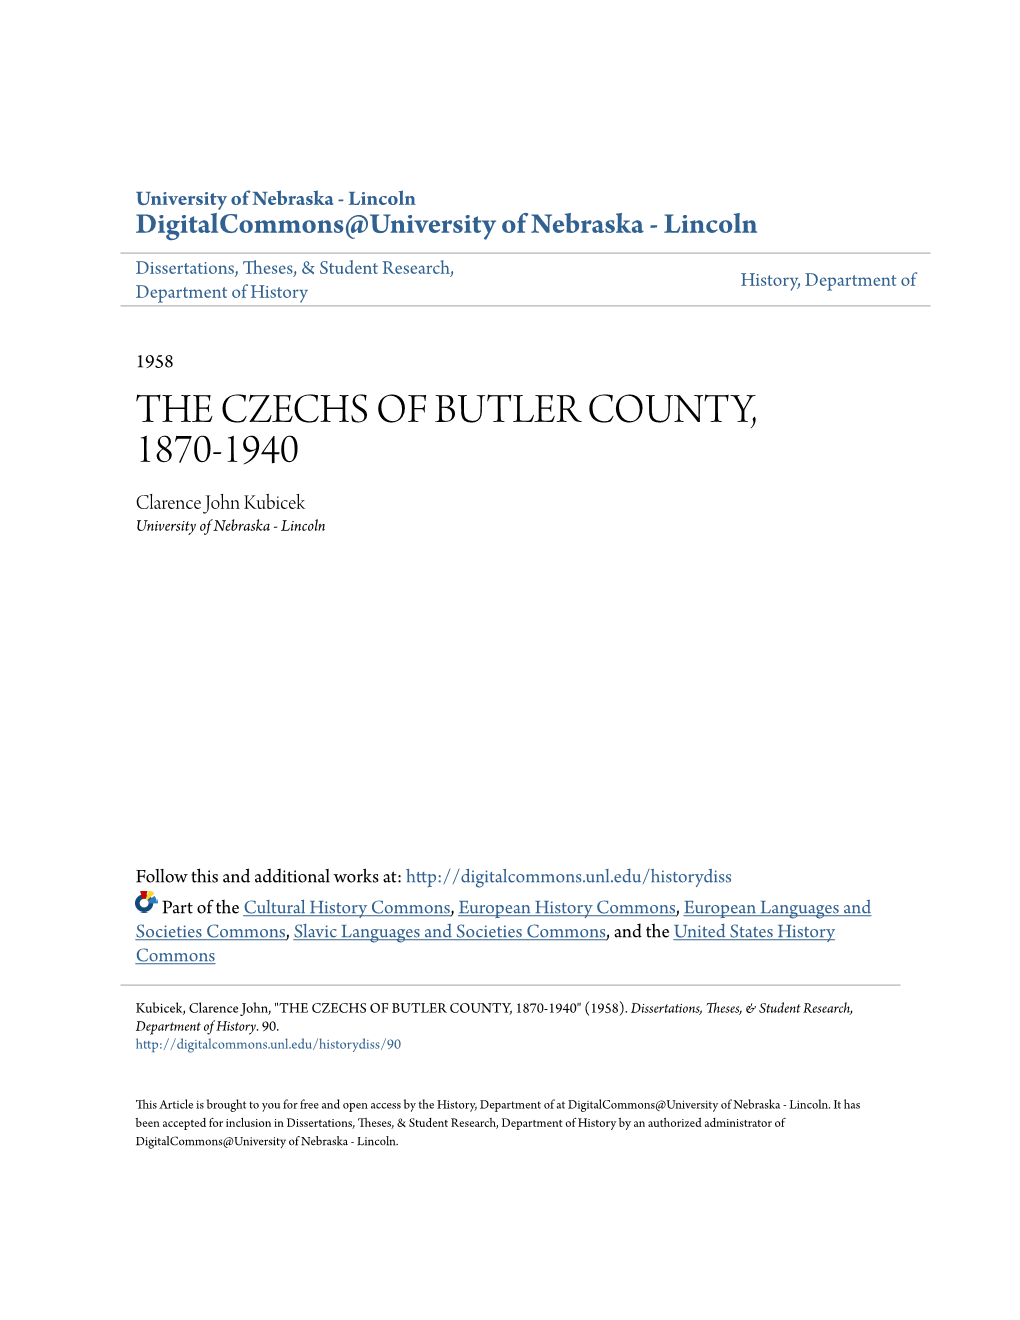 THE CZECHS of BUTLER COUNTY, 1870-1940 Clarence John Kubicek University of Nebraska - Lincoln